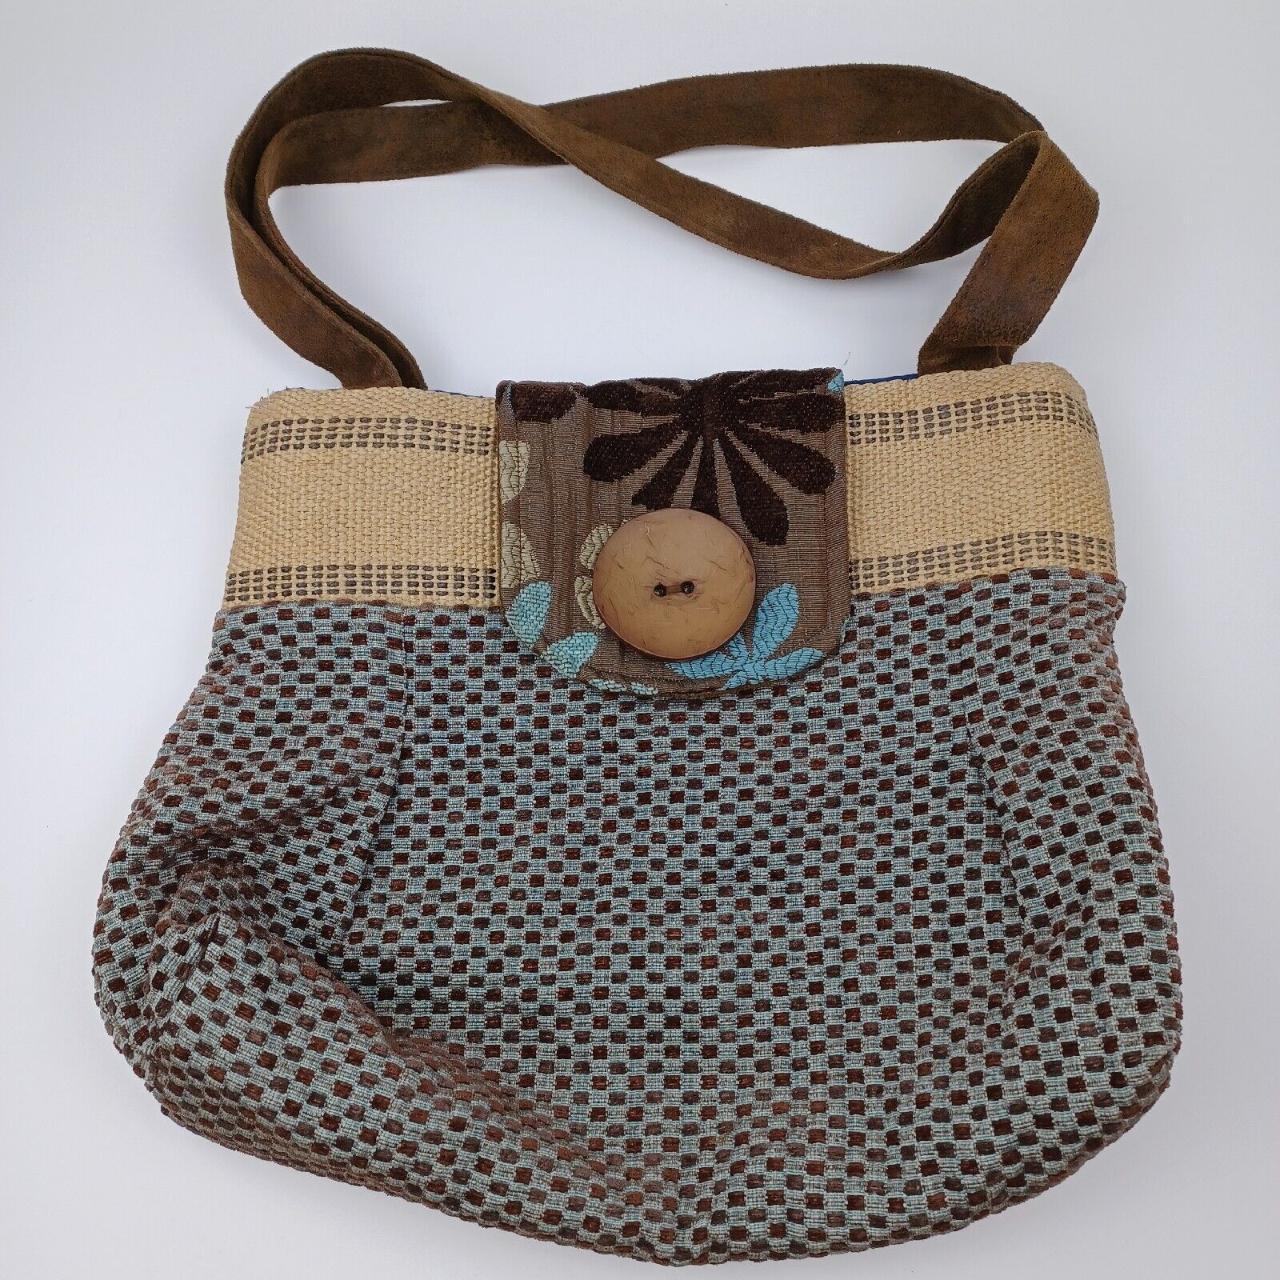 30 New Beautiful Handmade Fabric Bags & Handbags For Women | Fabric bags, Handmade  Bags, Handbags, - YouTube